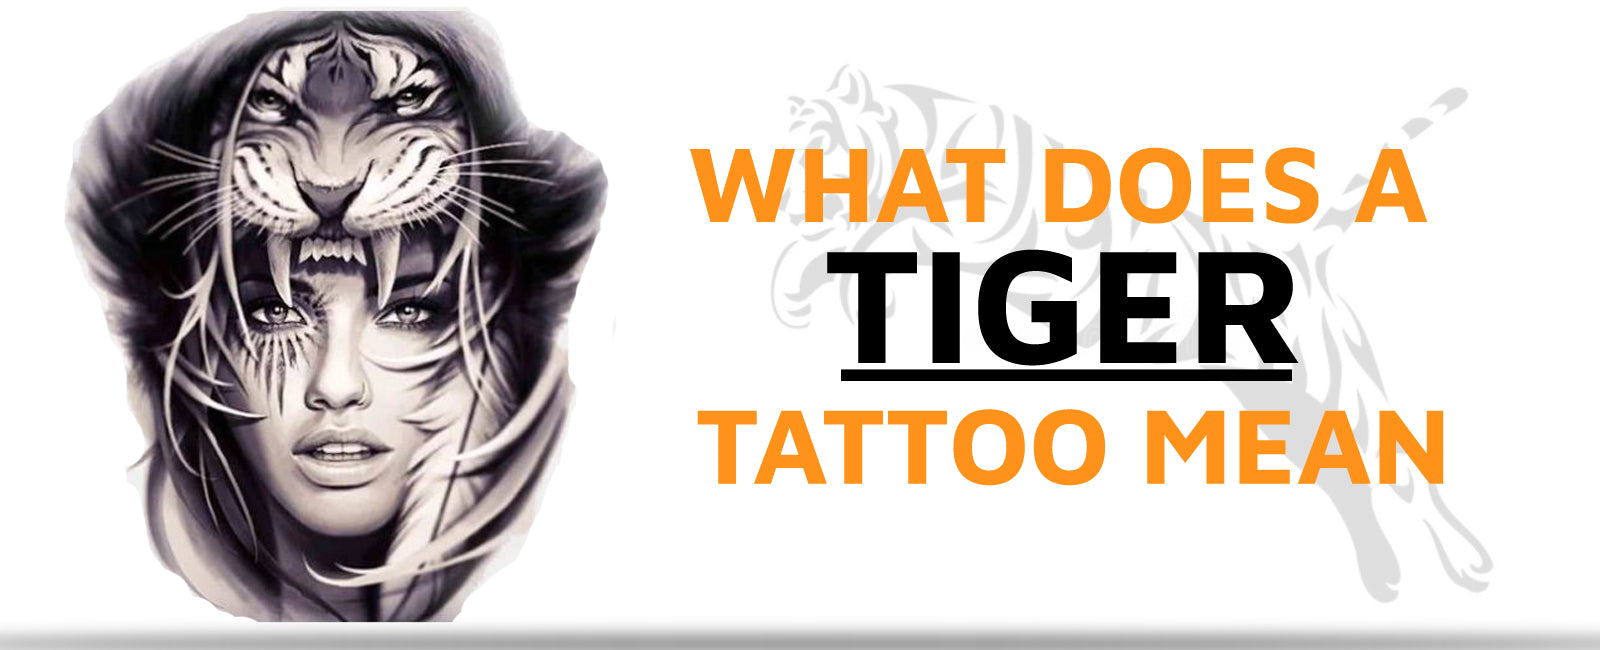 Geometric Tiger Head | Geometric tiger, Tiger tattoo, Tiger tattoo design